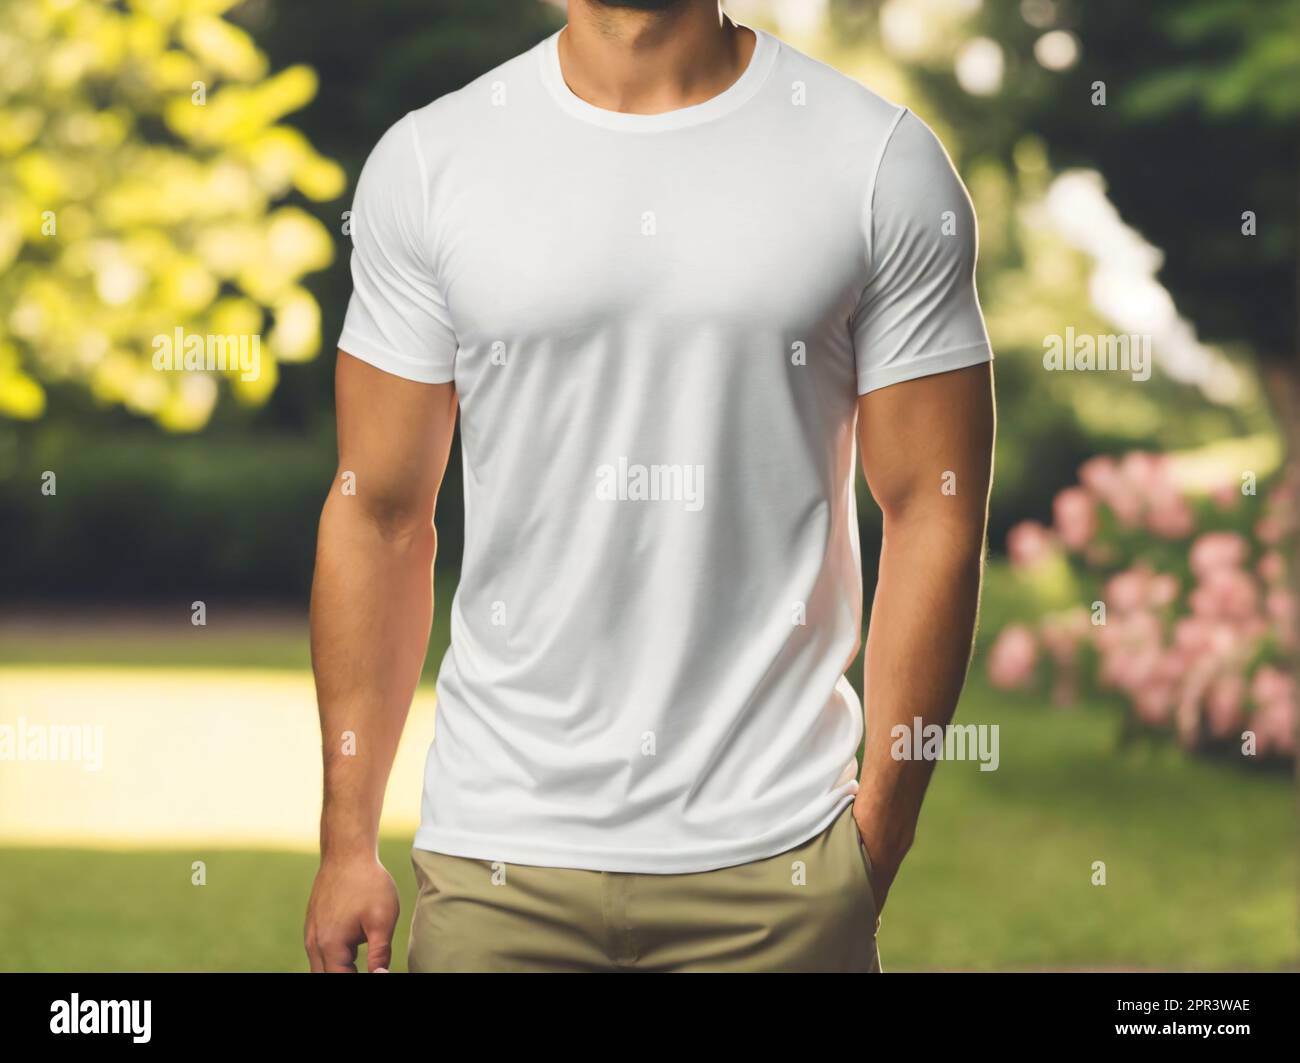 Sportlicher Mann mit weißem T-Shirt im grünen Gartenhintergrund. Vorlage oder Modell für Bekleidungsdesign Stockfoto